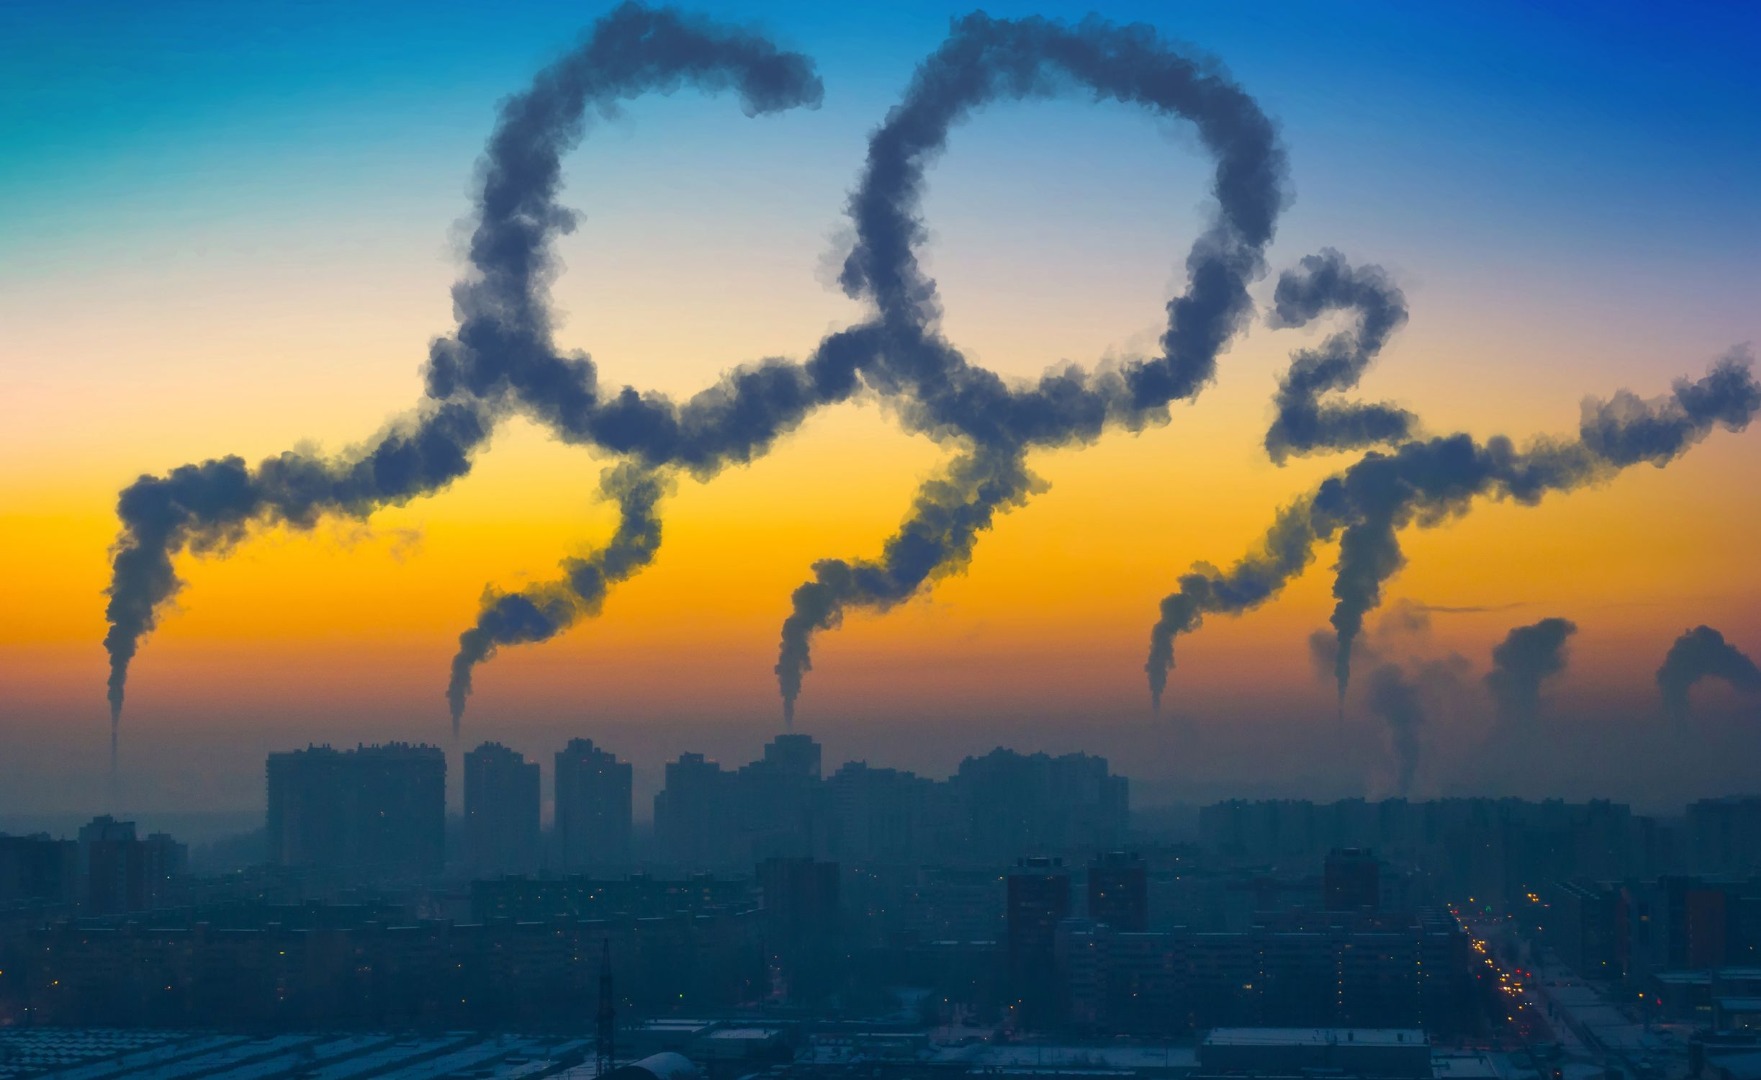 Połowa zużytych opon trafia do spalenia i emituje CO2. Technologia polskiej firmy pozwala je przerabiać na cenne surowce